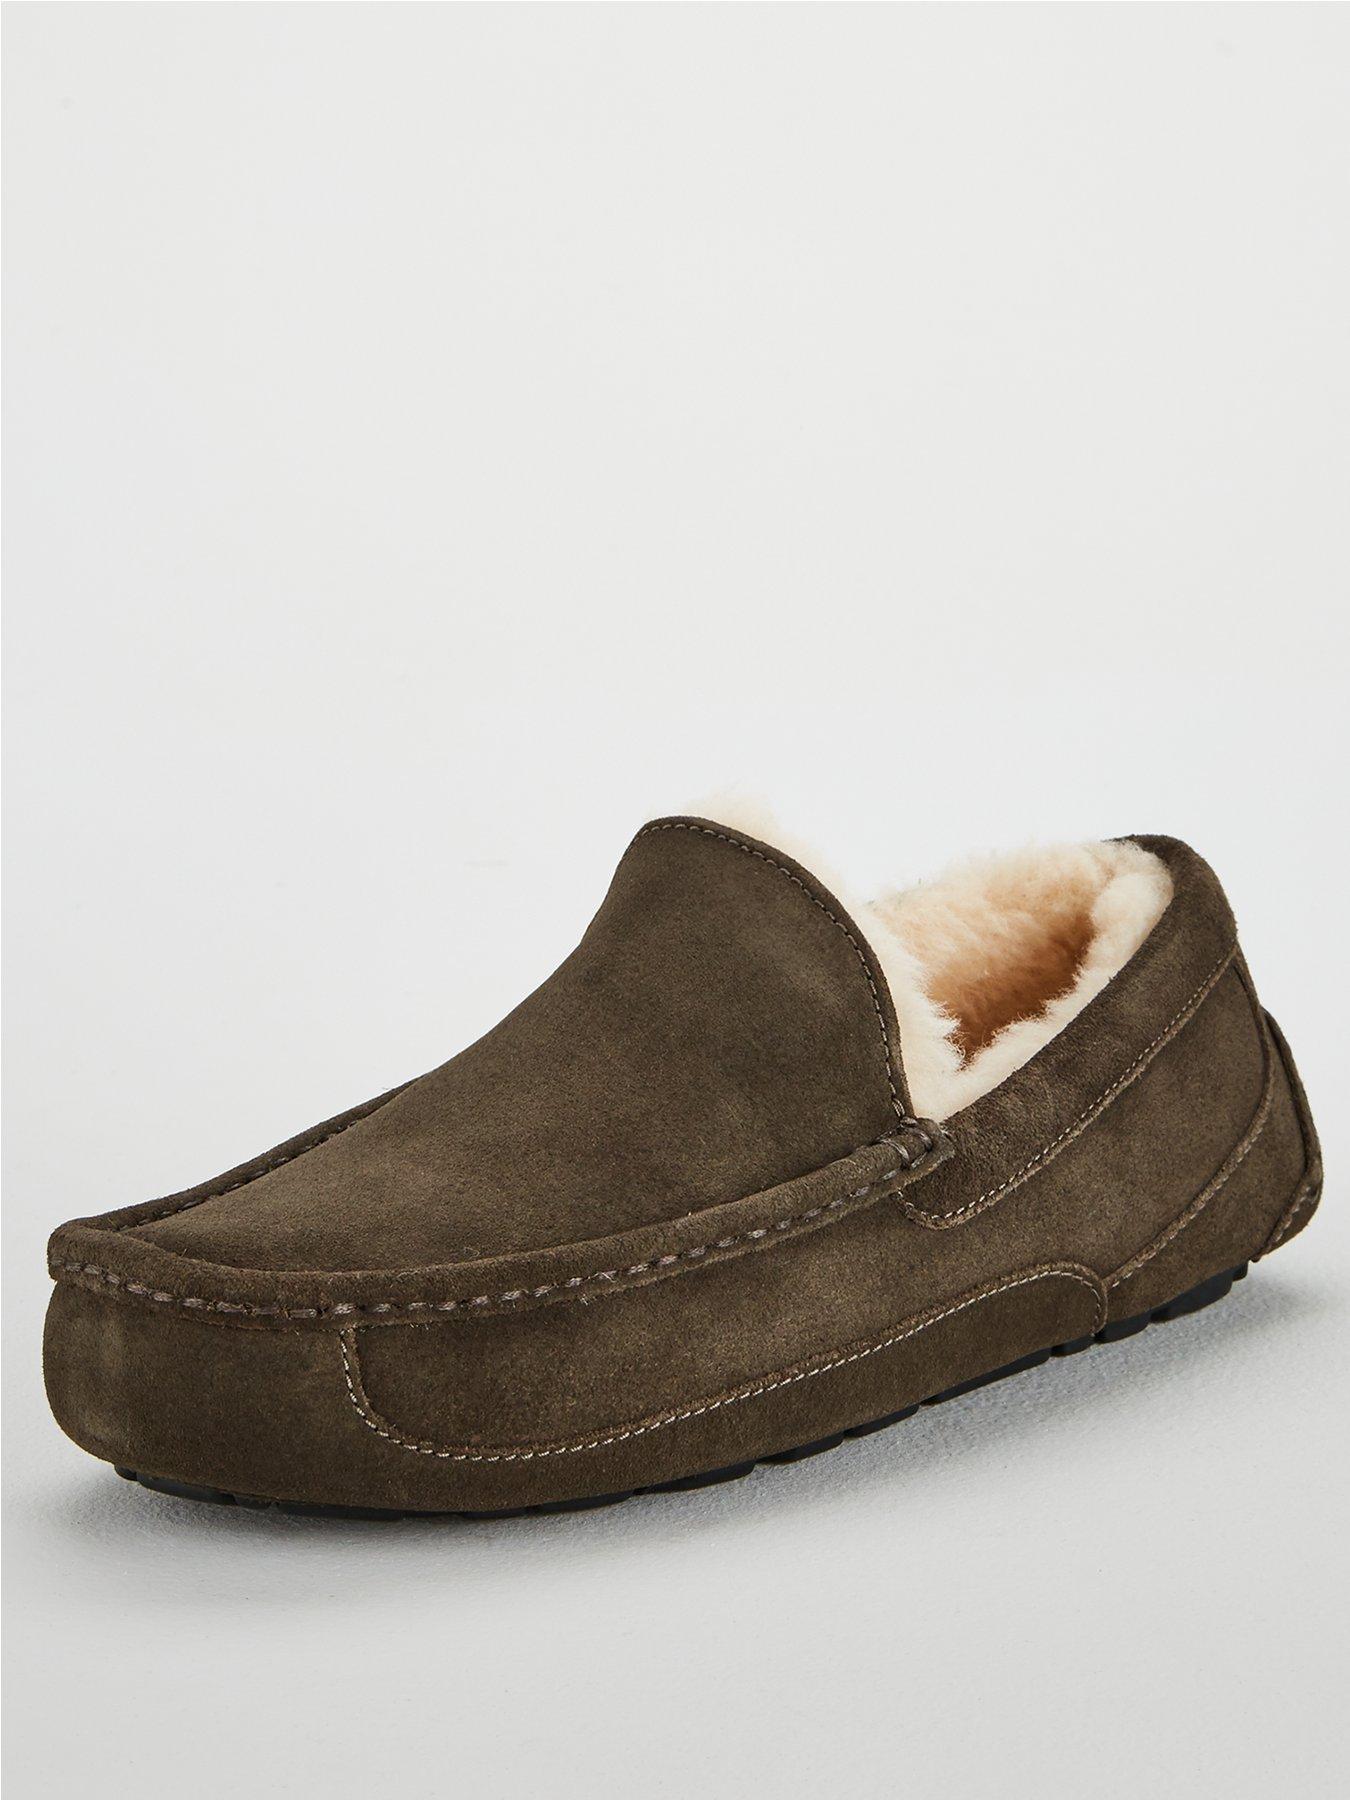 ugg slippers for men ireland